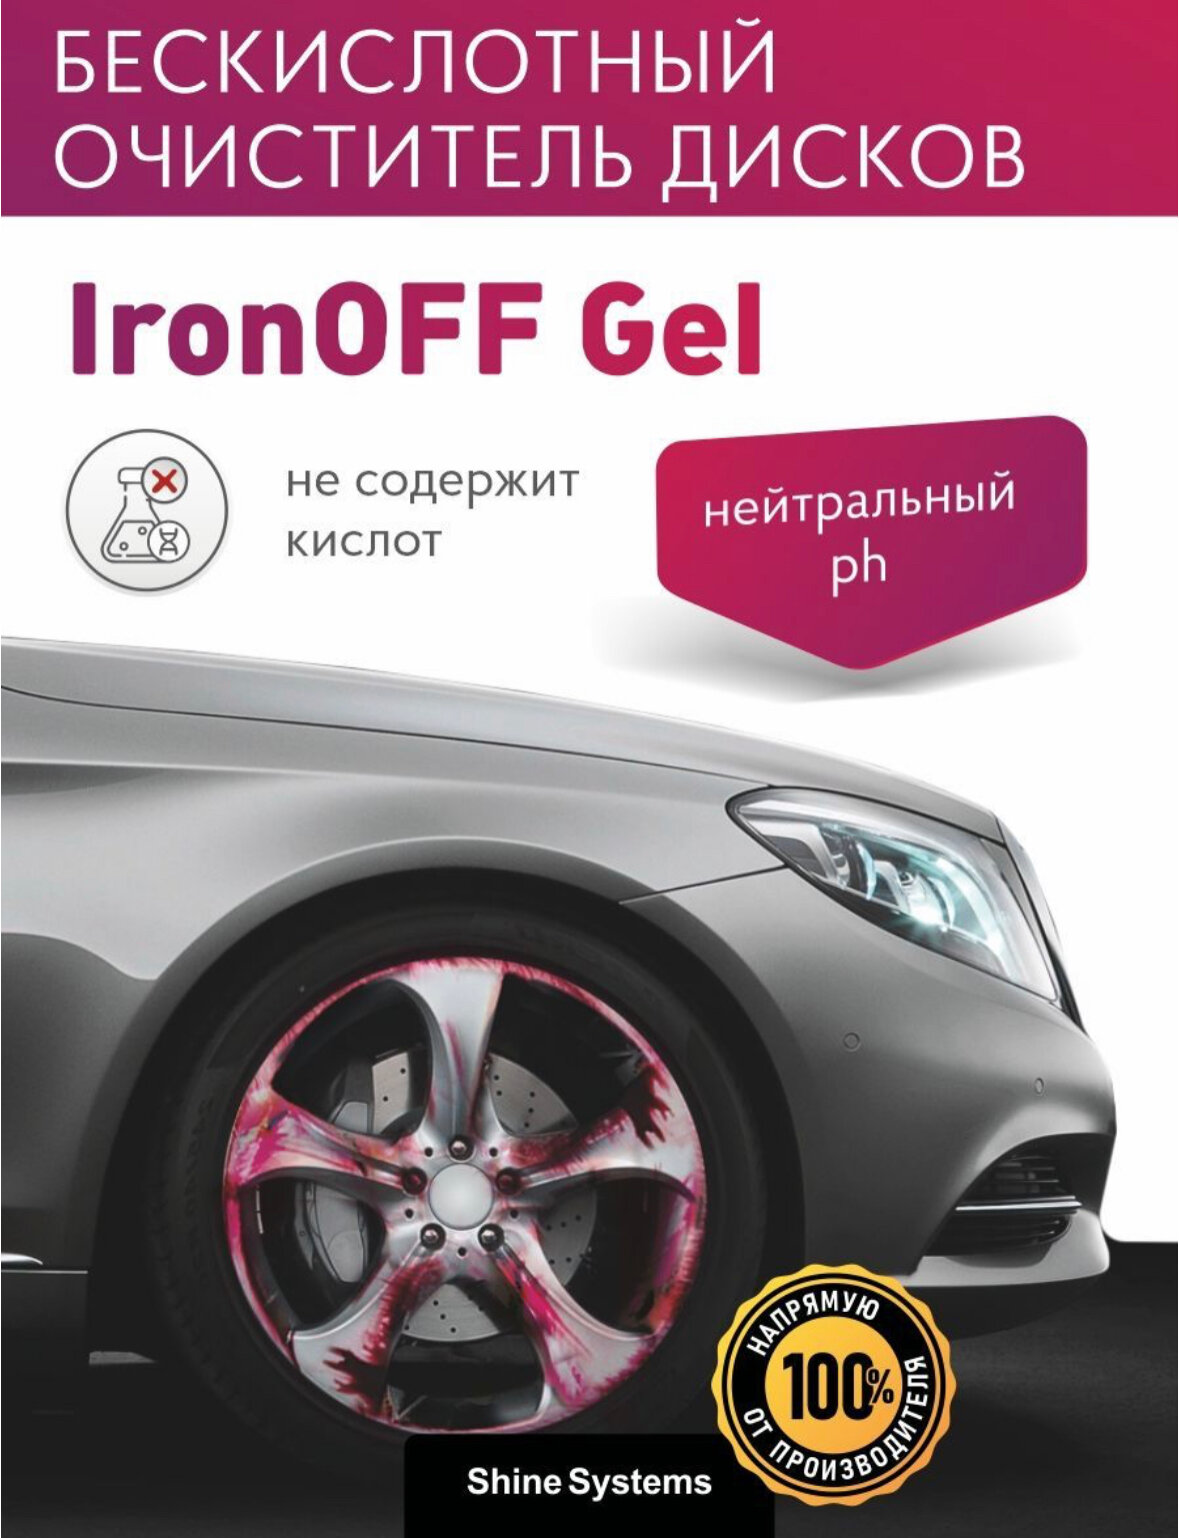 Iron OFF Gel - Нейтральный очиститель кузова дисков с индикатором 750мл